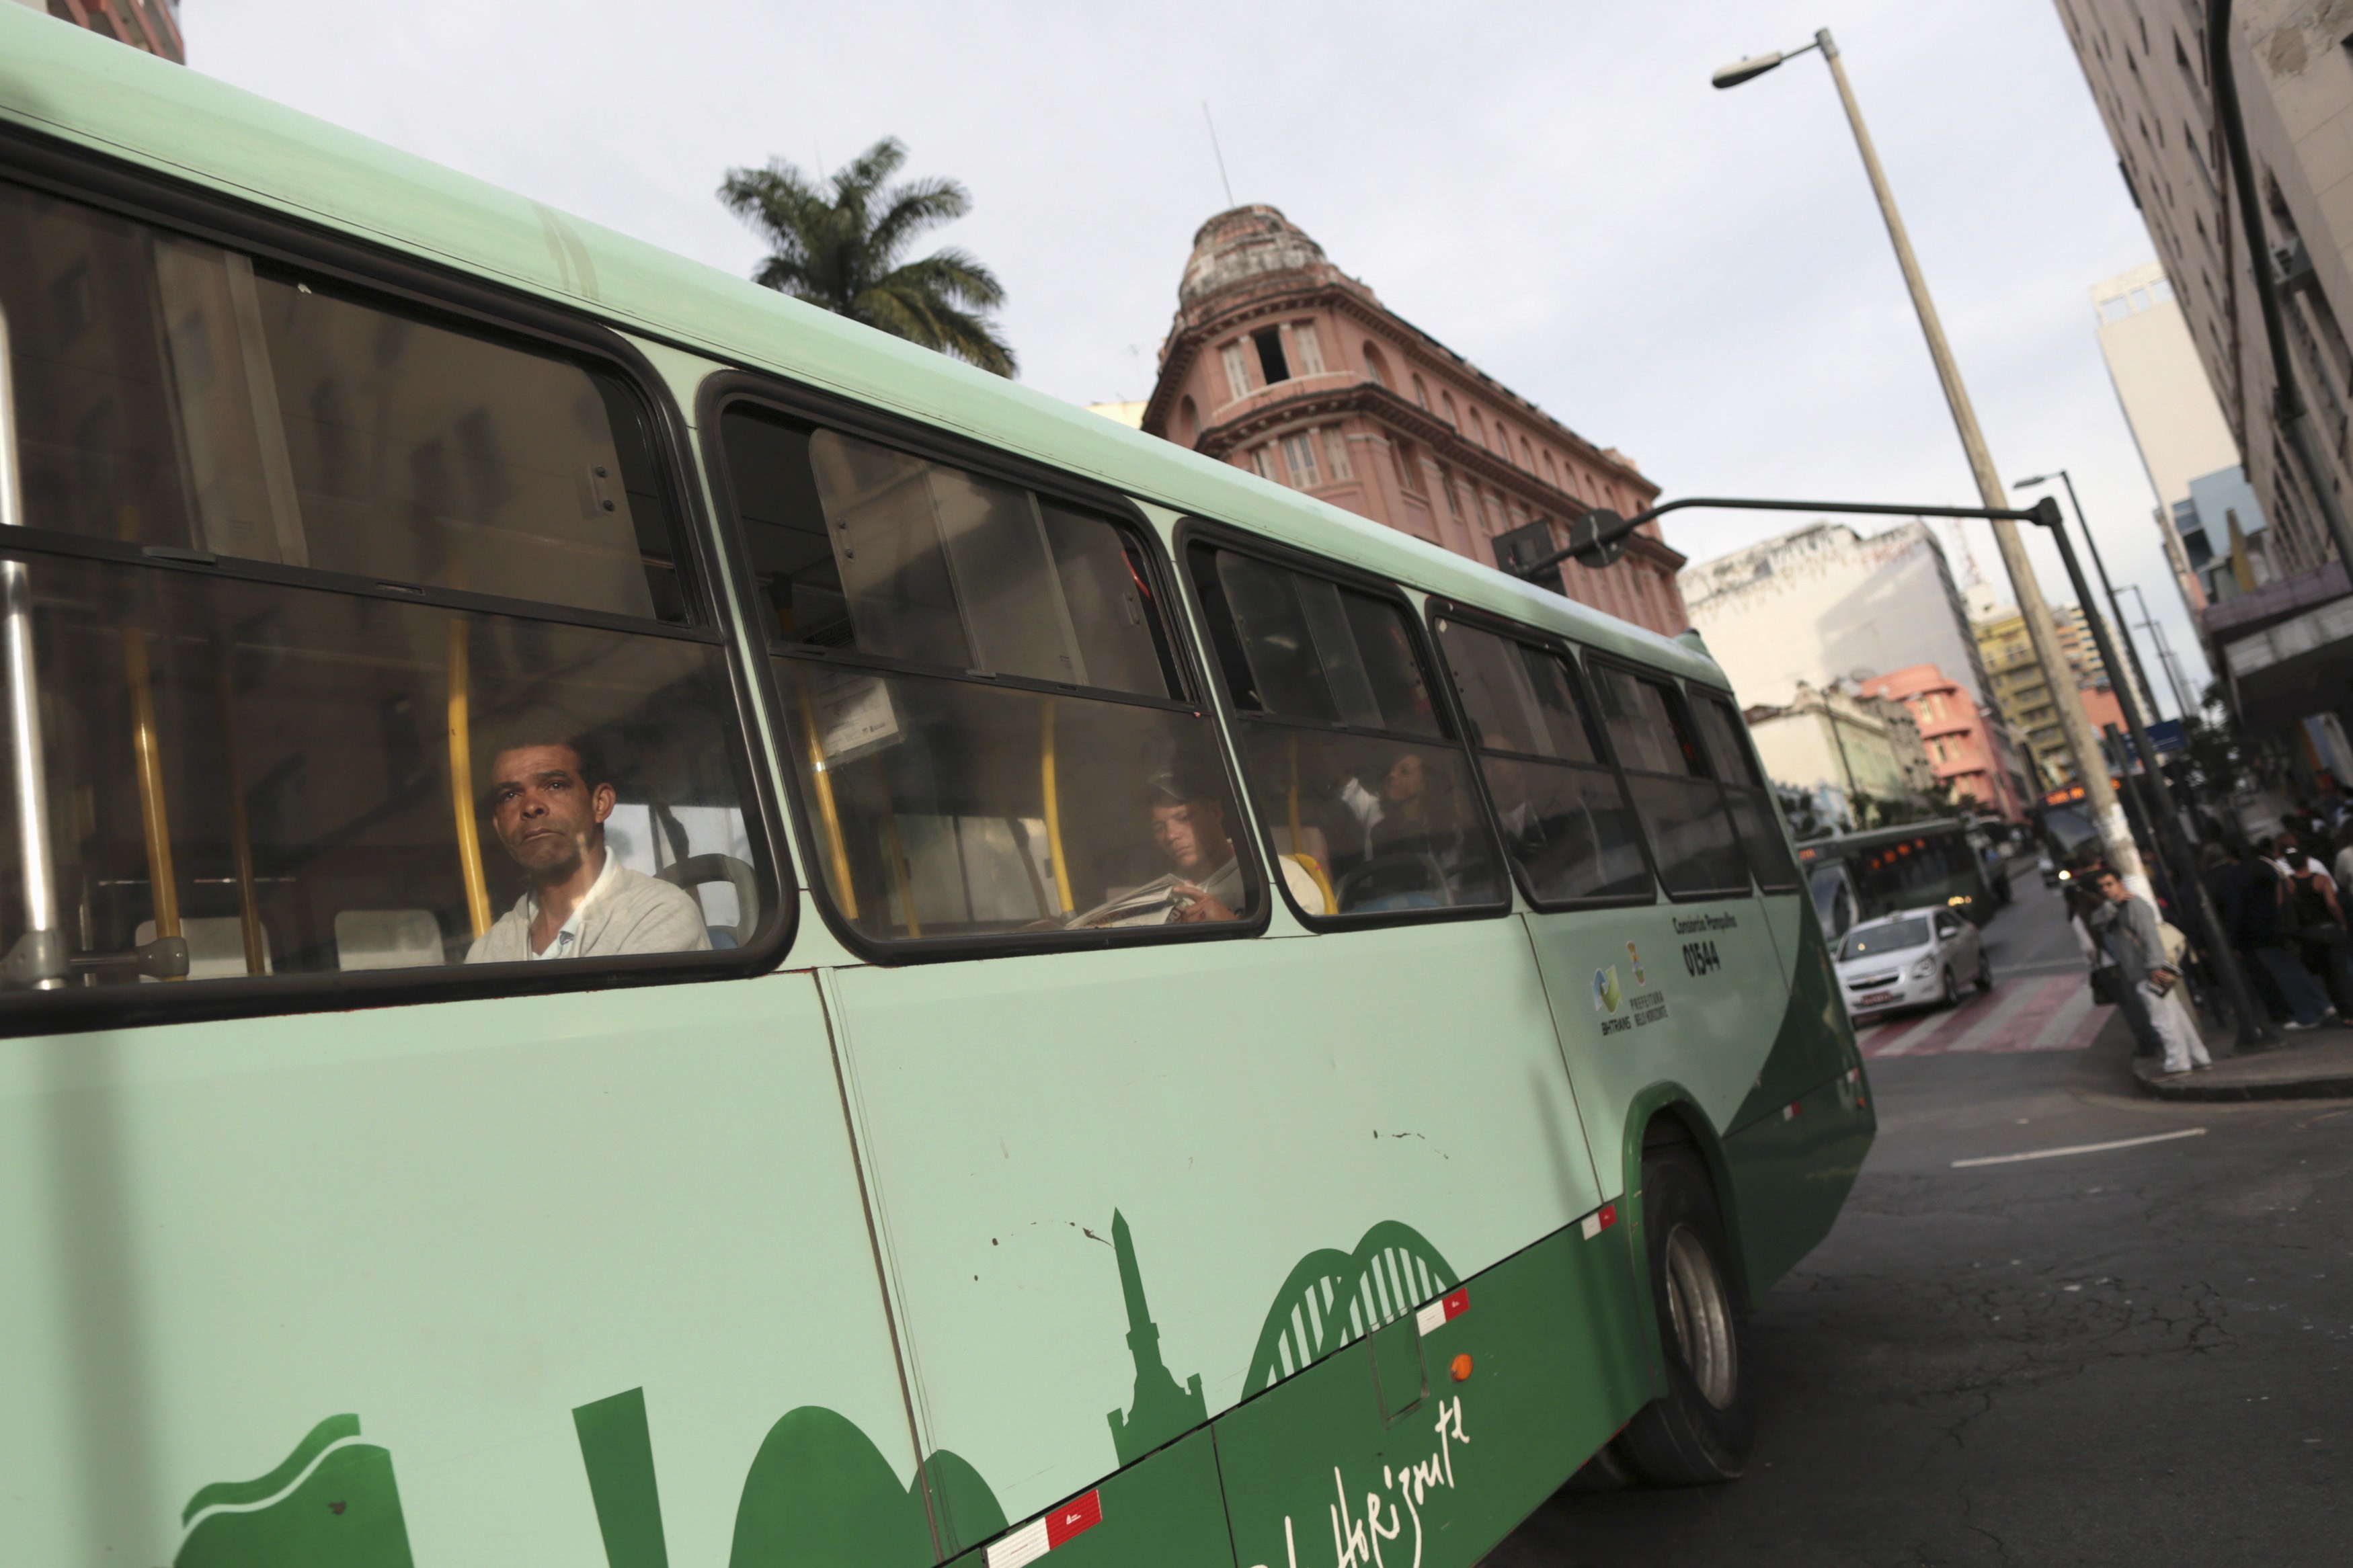 Οι επιβάτες του λεωφορείου περοέρχονταν από χωριά κοντά στην πόλη Άβιλα ΦΩΤΟ ΑΡΧΕΙΟΥ REUTERS